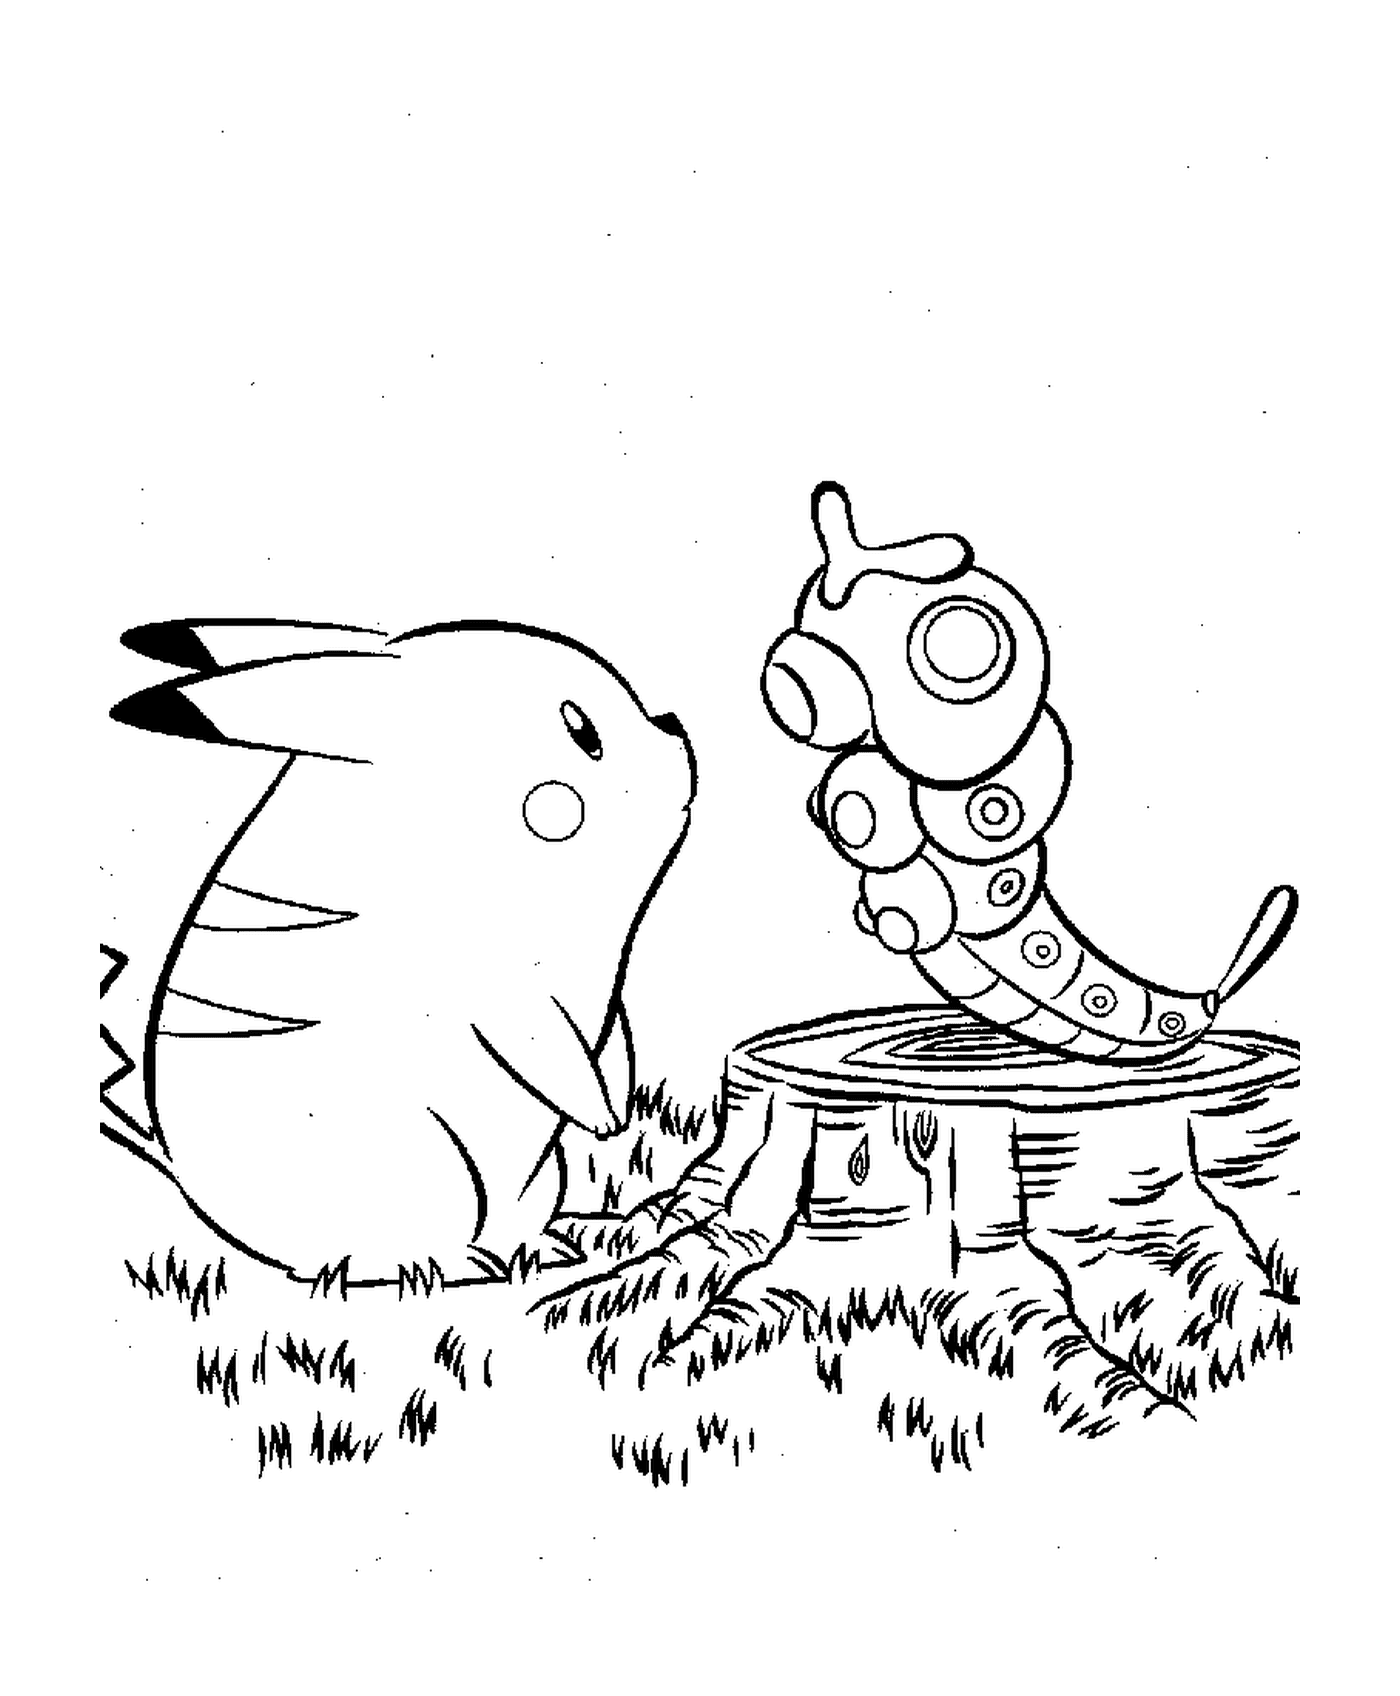  Pikachu accompagnato da un insetto 